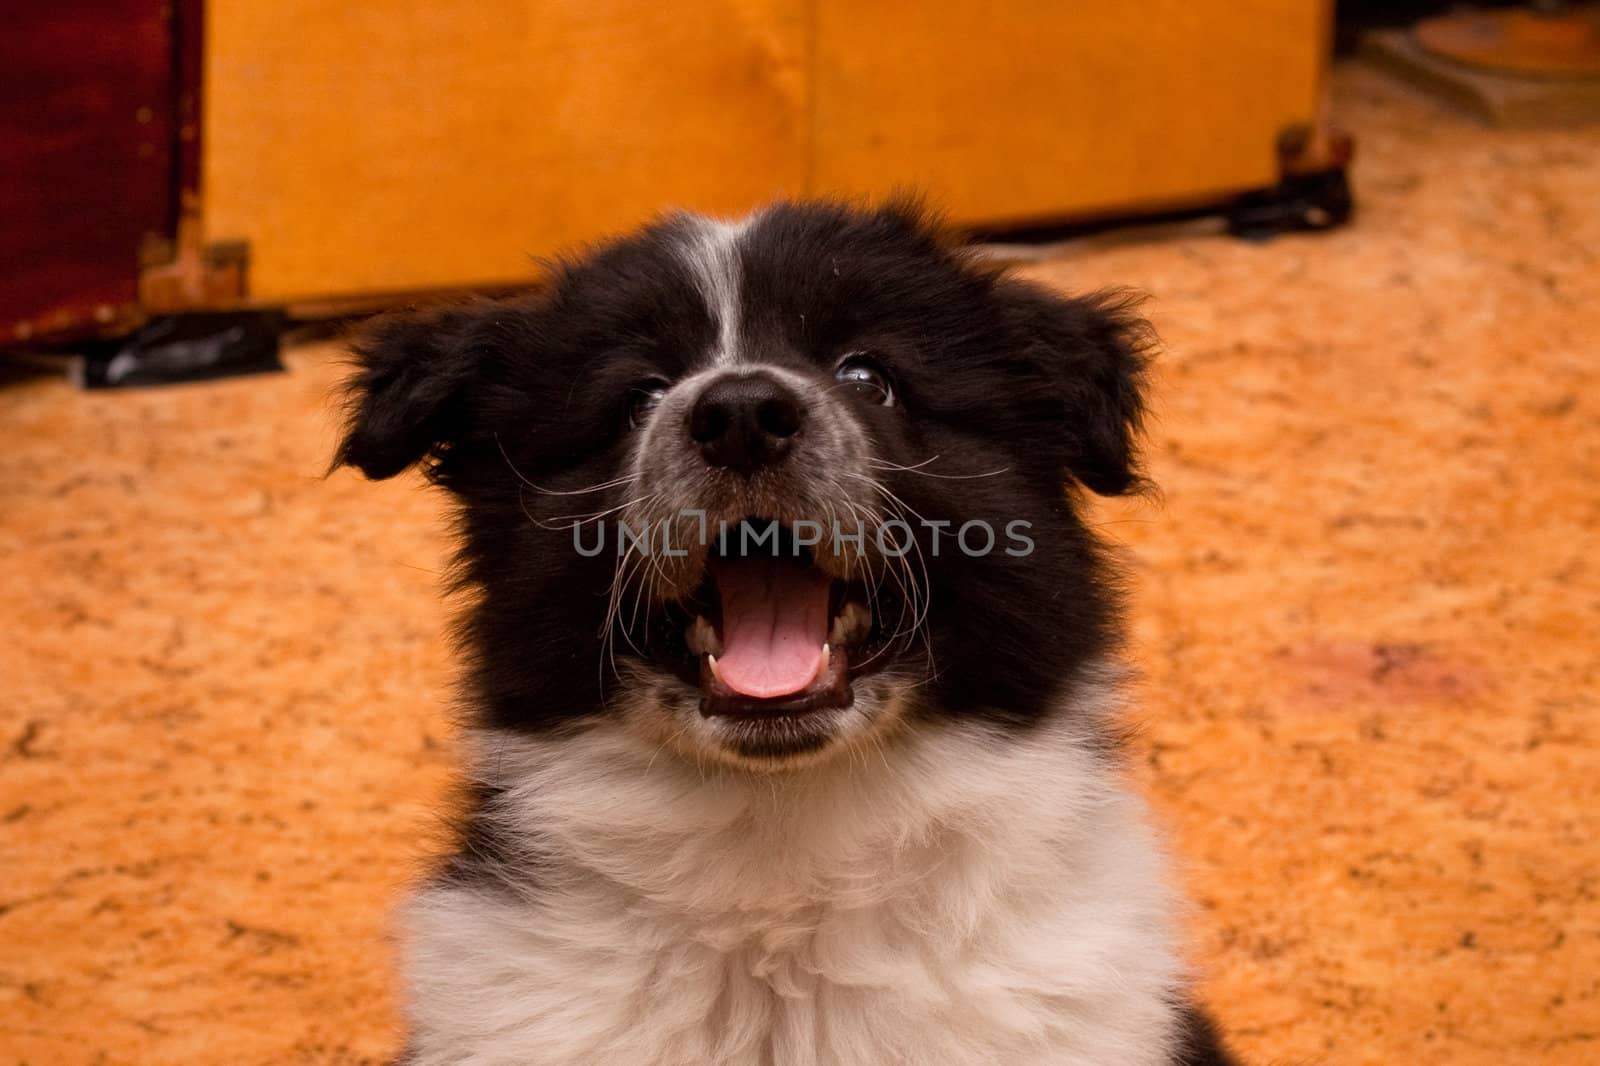 samoed puppy by foaloce